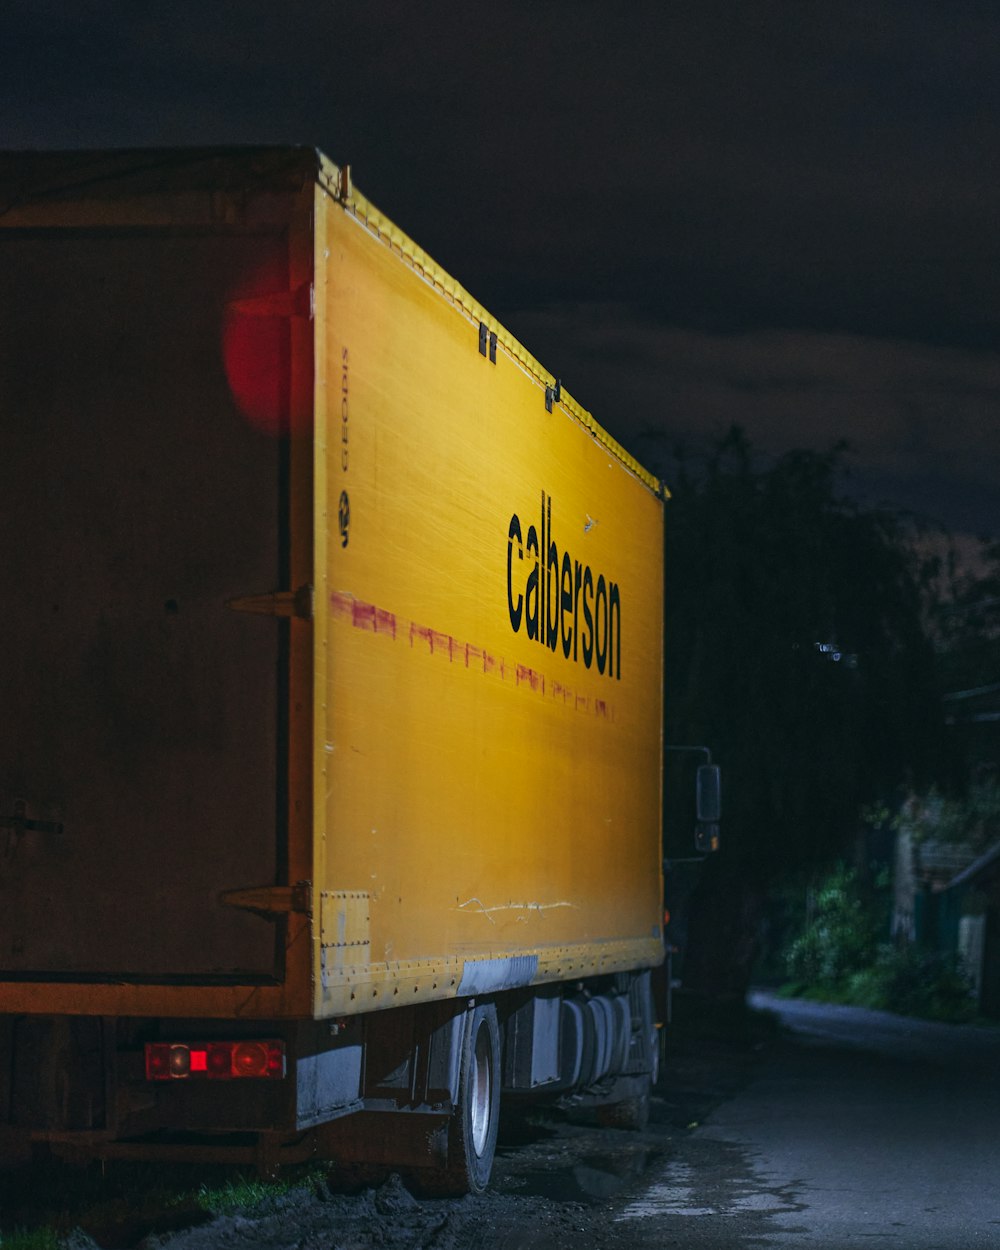 Camión de caja amarilla y roja en la carretera durante la noche